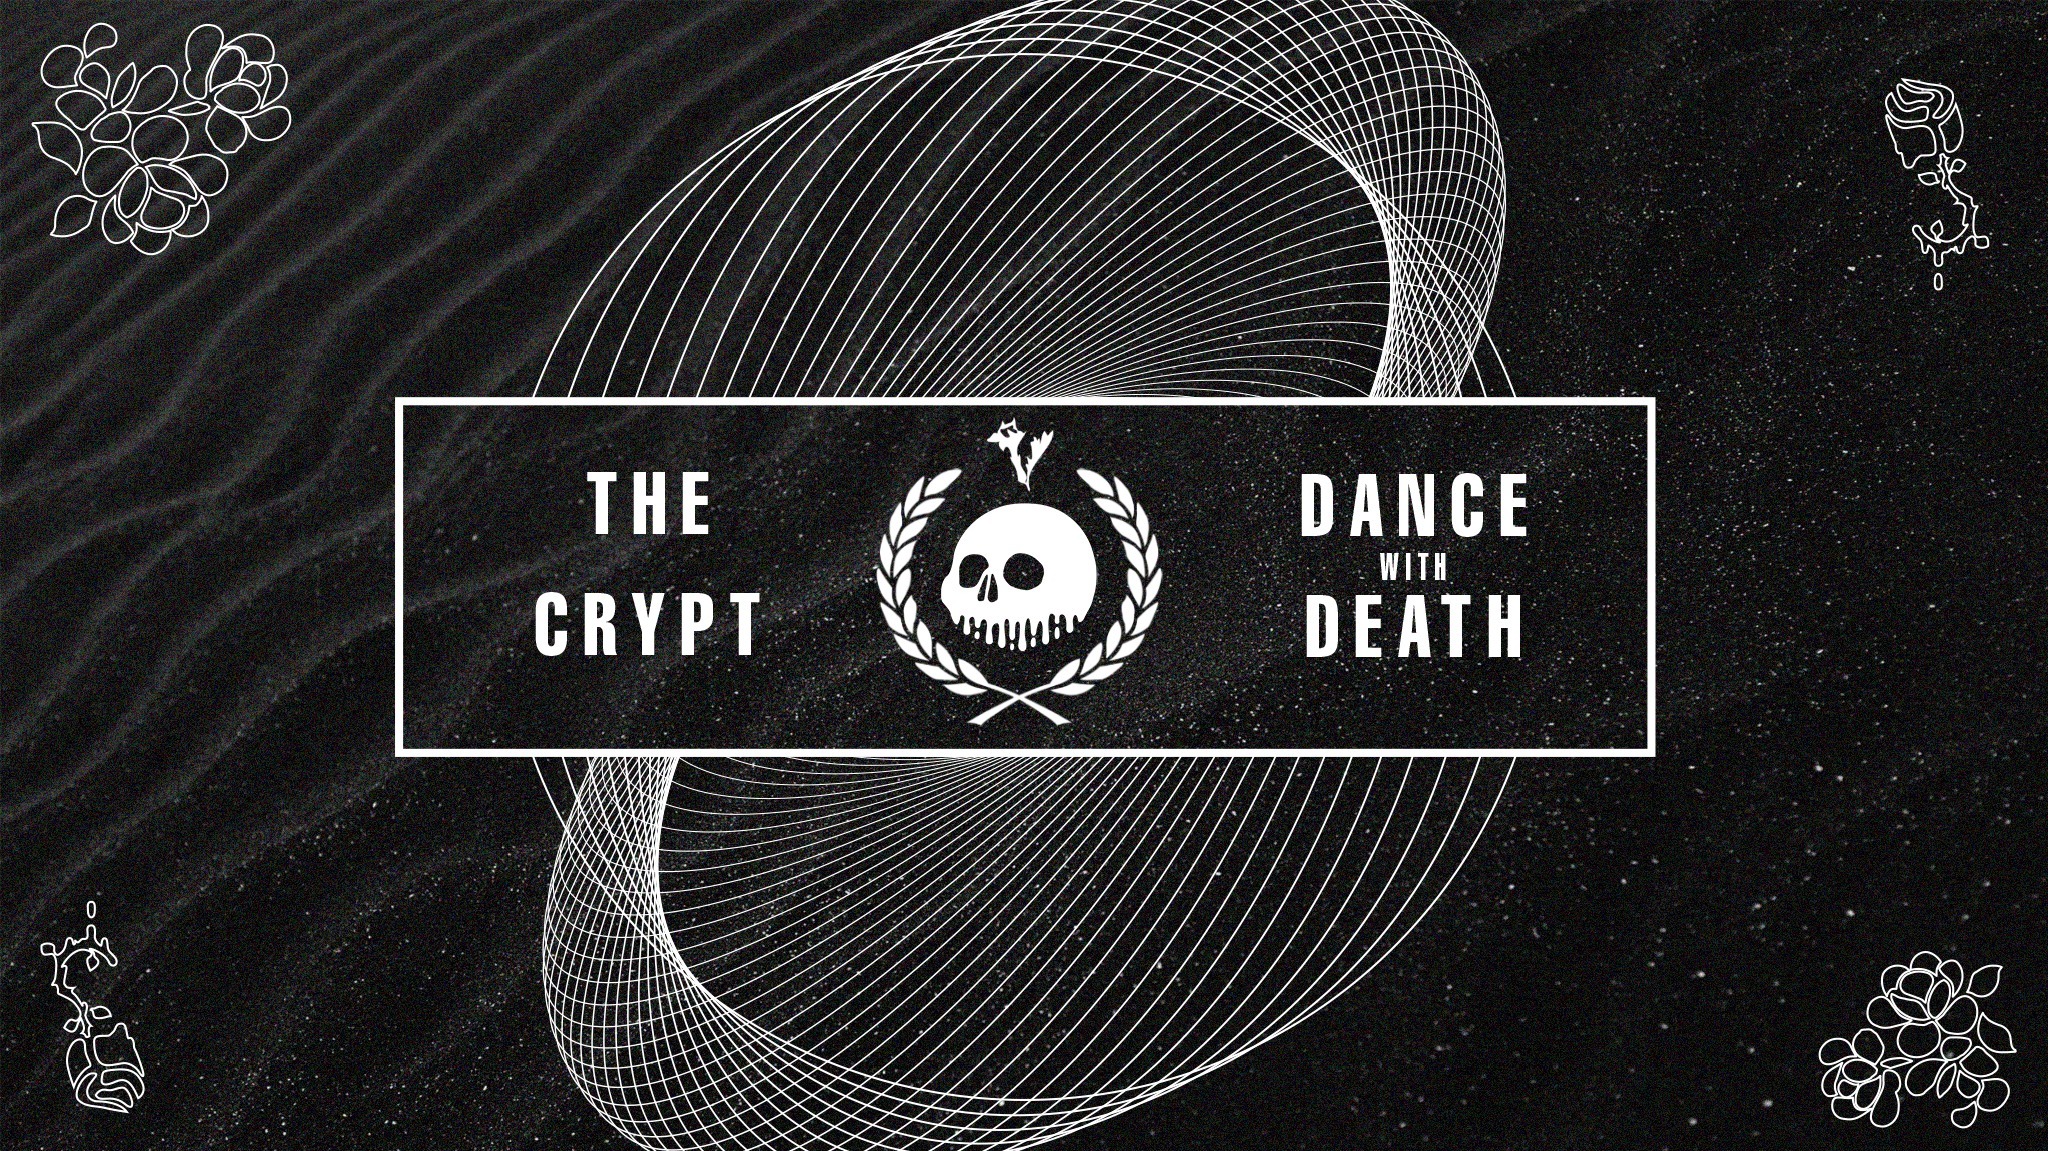 The Crypt LLC